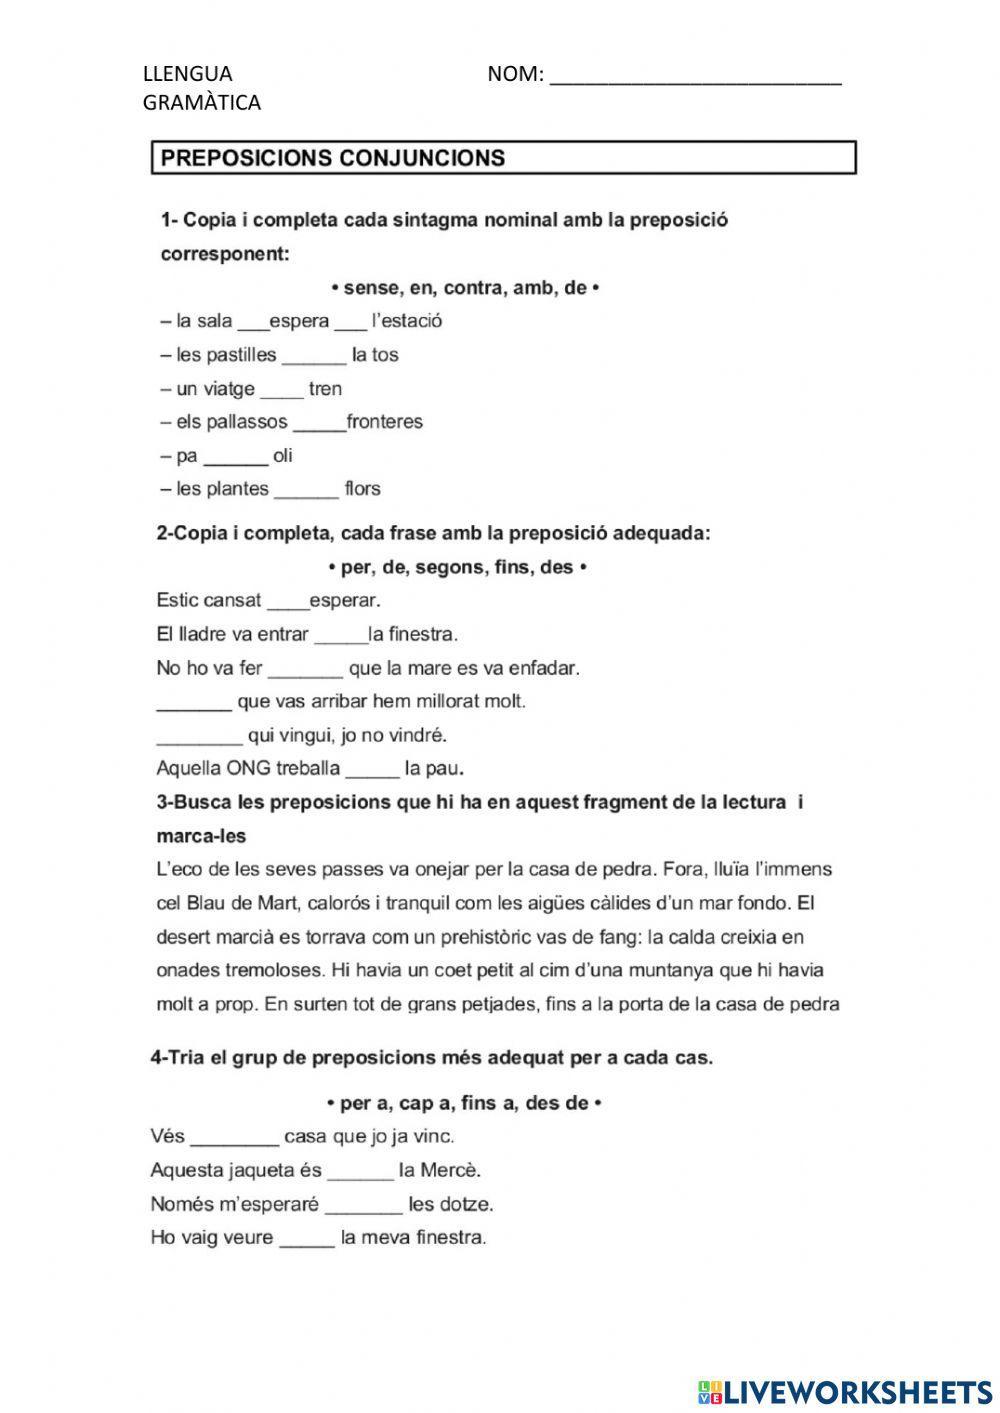 ENLLAÇOS (preposicions i conjuncions)